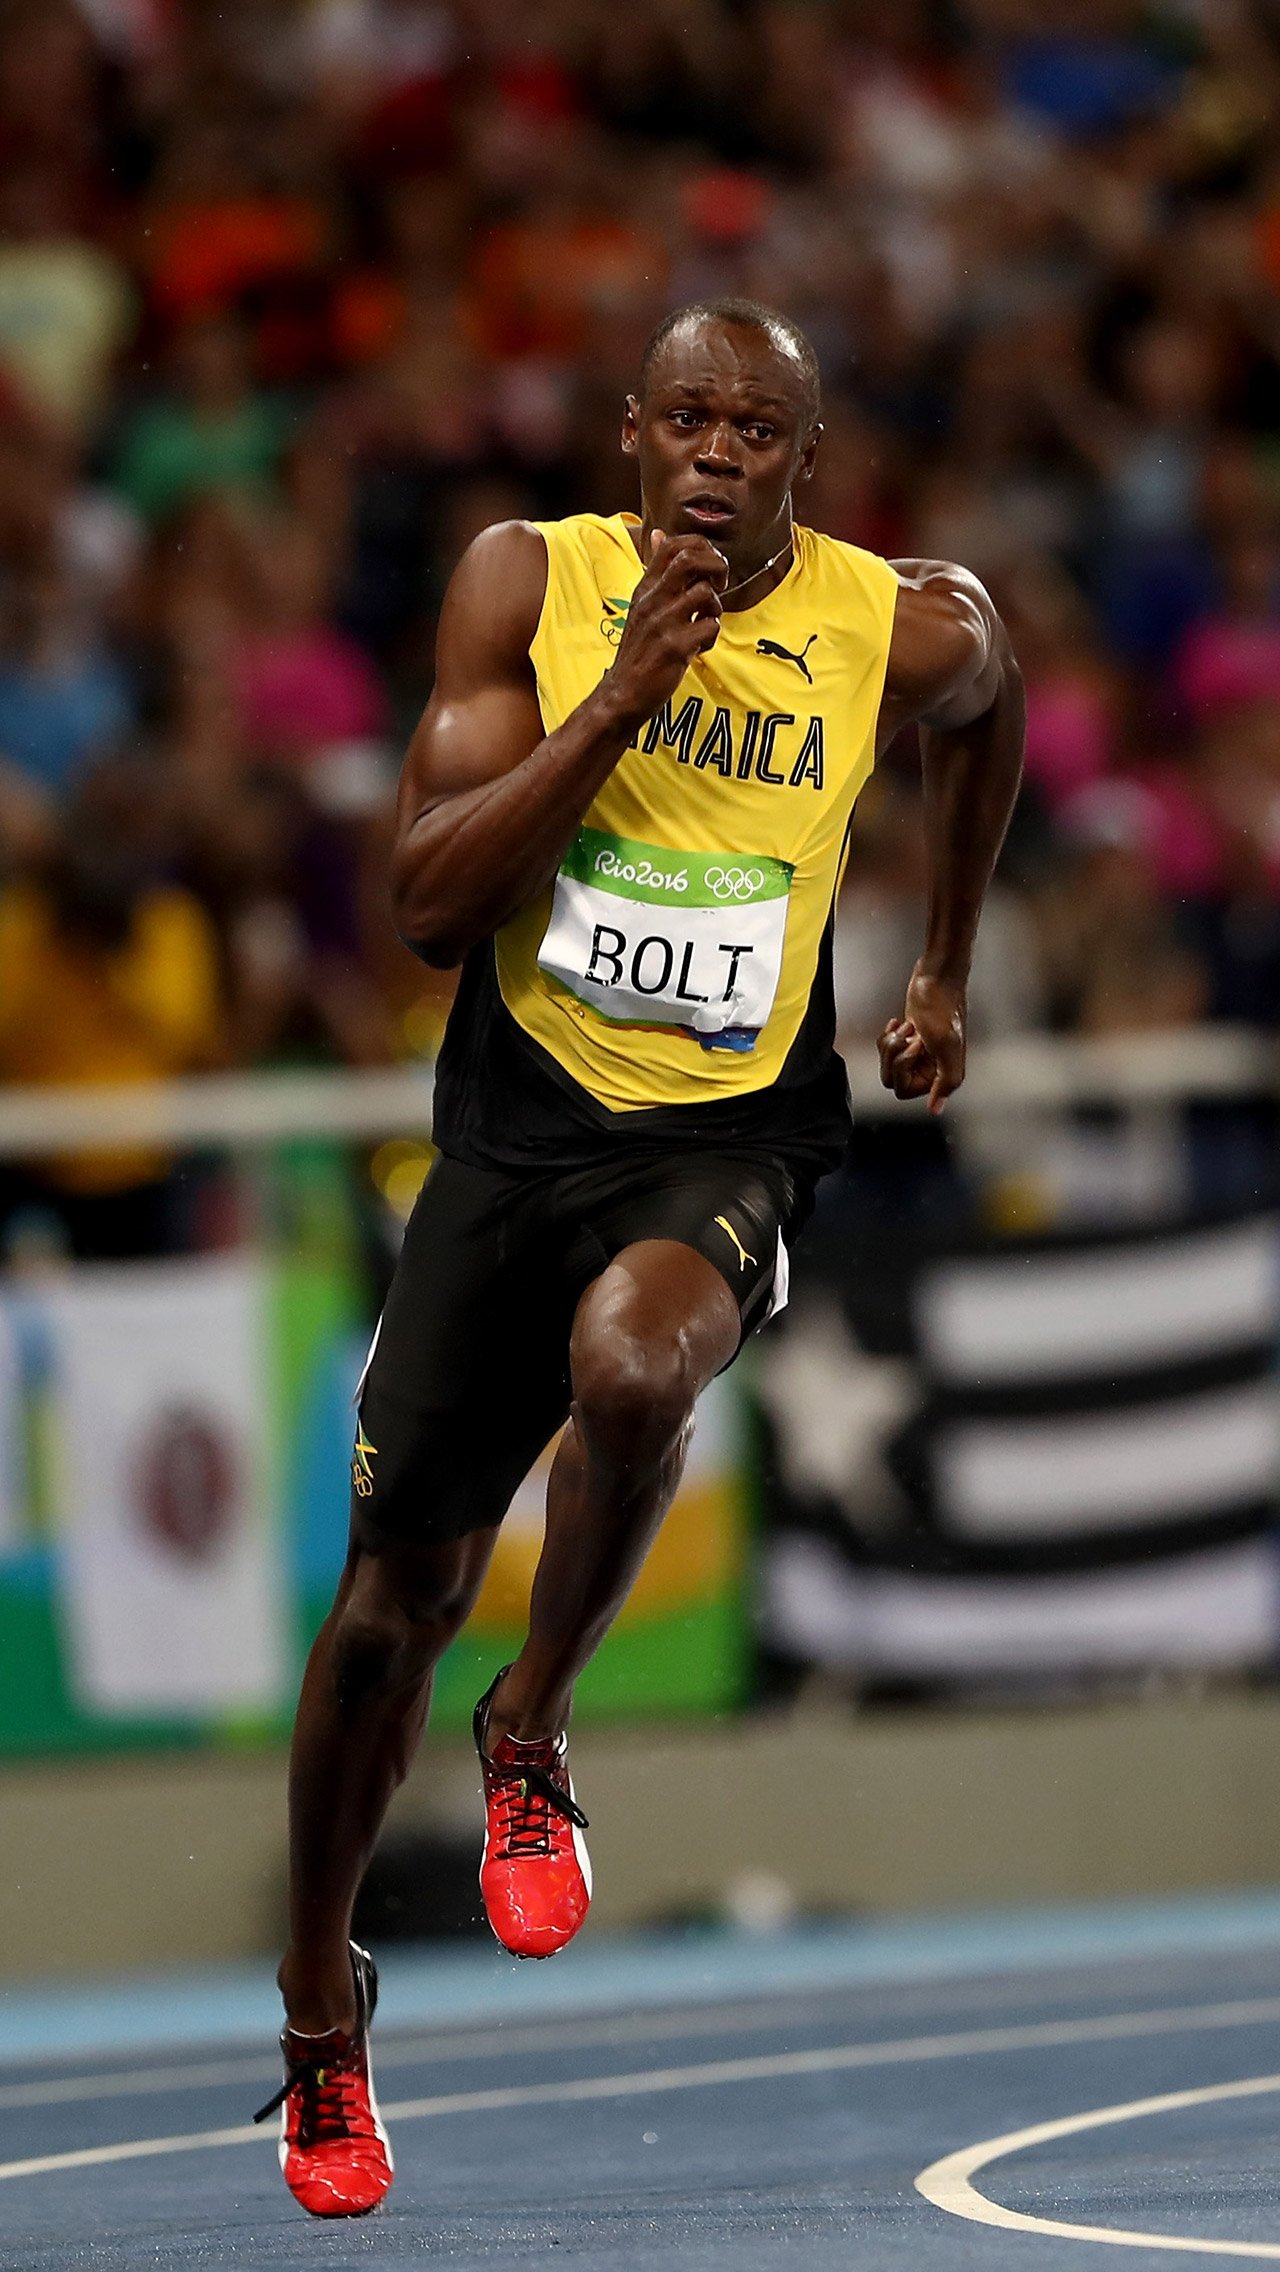 Восьмикратный олимпийский чемпион и обладатель мировых рекордов на дистанциях 100 и 200 м завершил карьеру в 2017 году на чемпионате мира в Лондоне. Тот забег завершился большой драмой. 